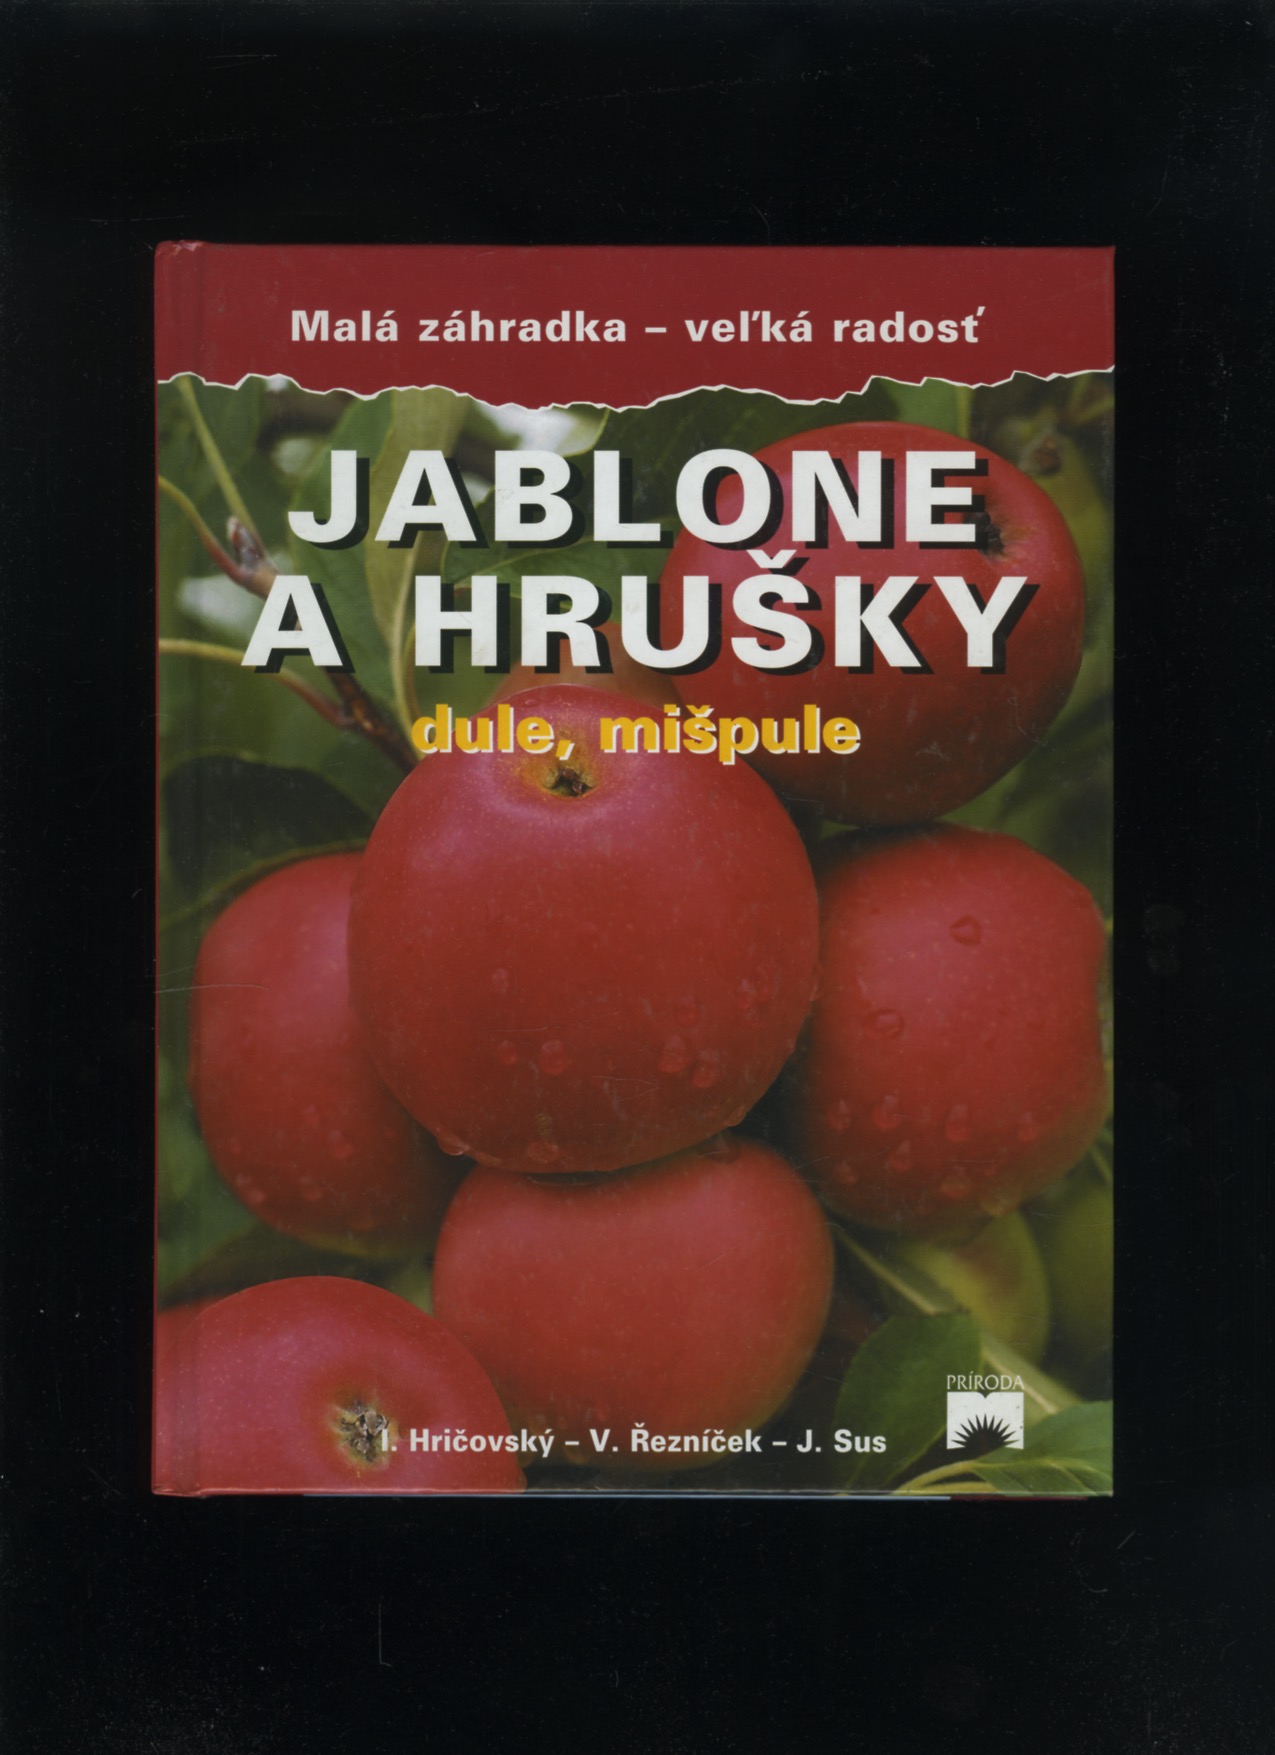 Jablone a hrušky, dule, mišpule (I. Hričovský V. Řezníček J. Sus)